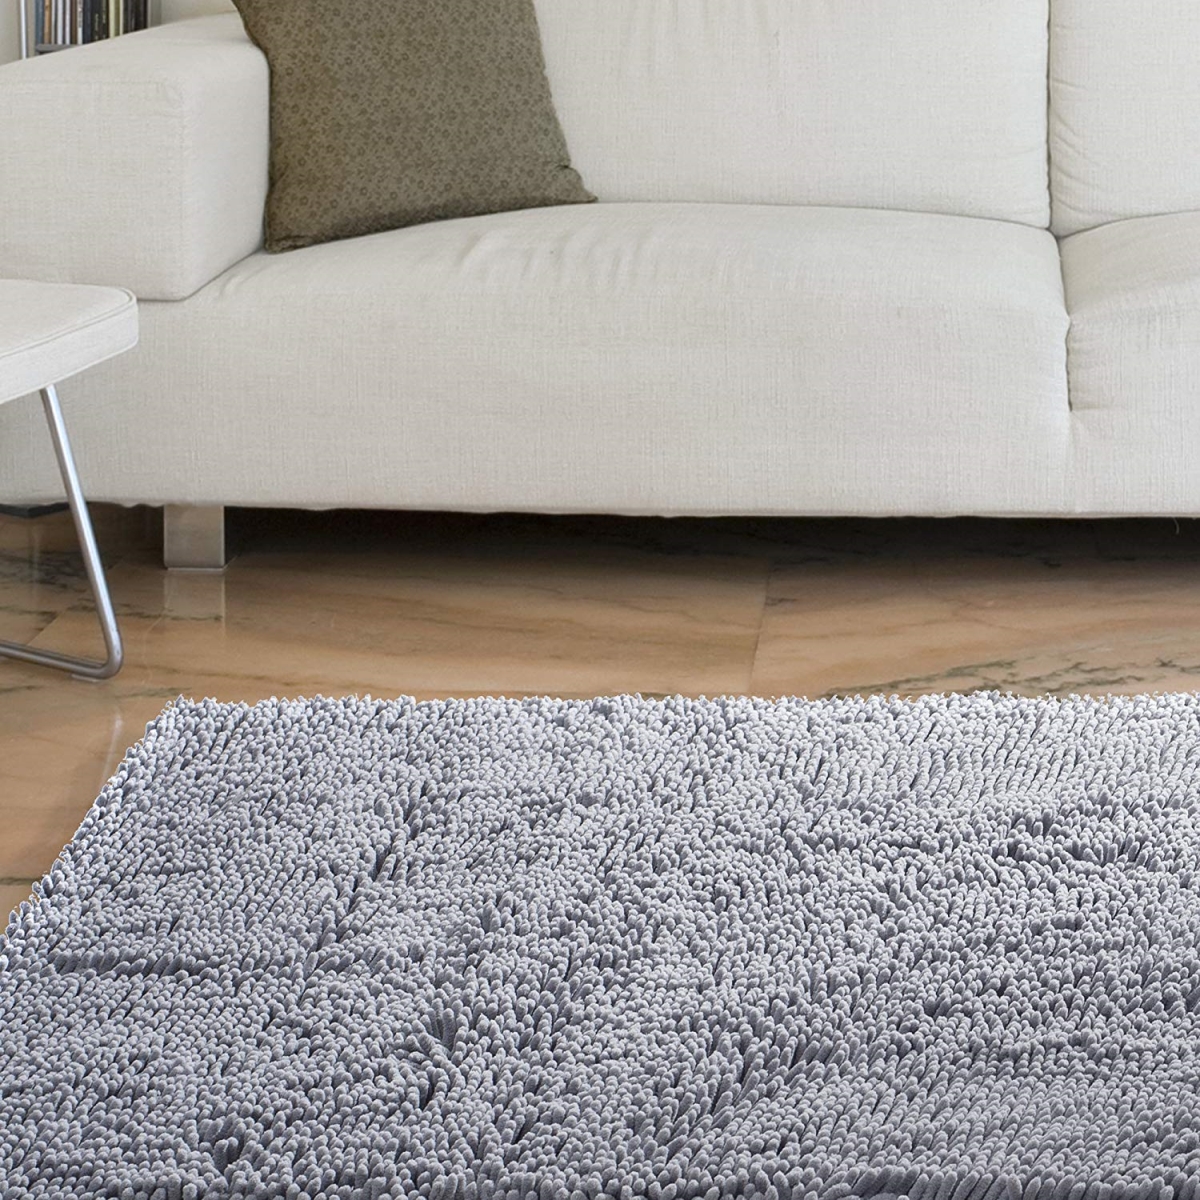 67a-00700 High Pile Shag Rug Carpet, 21 X 36 In. - Grey